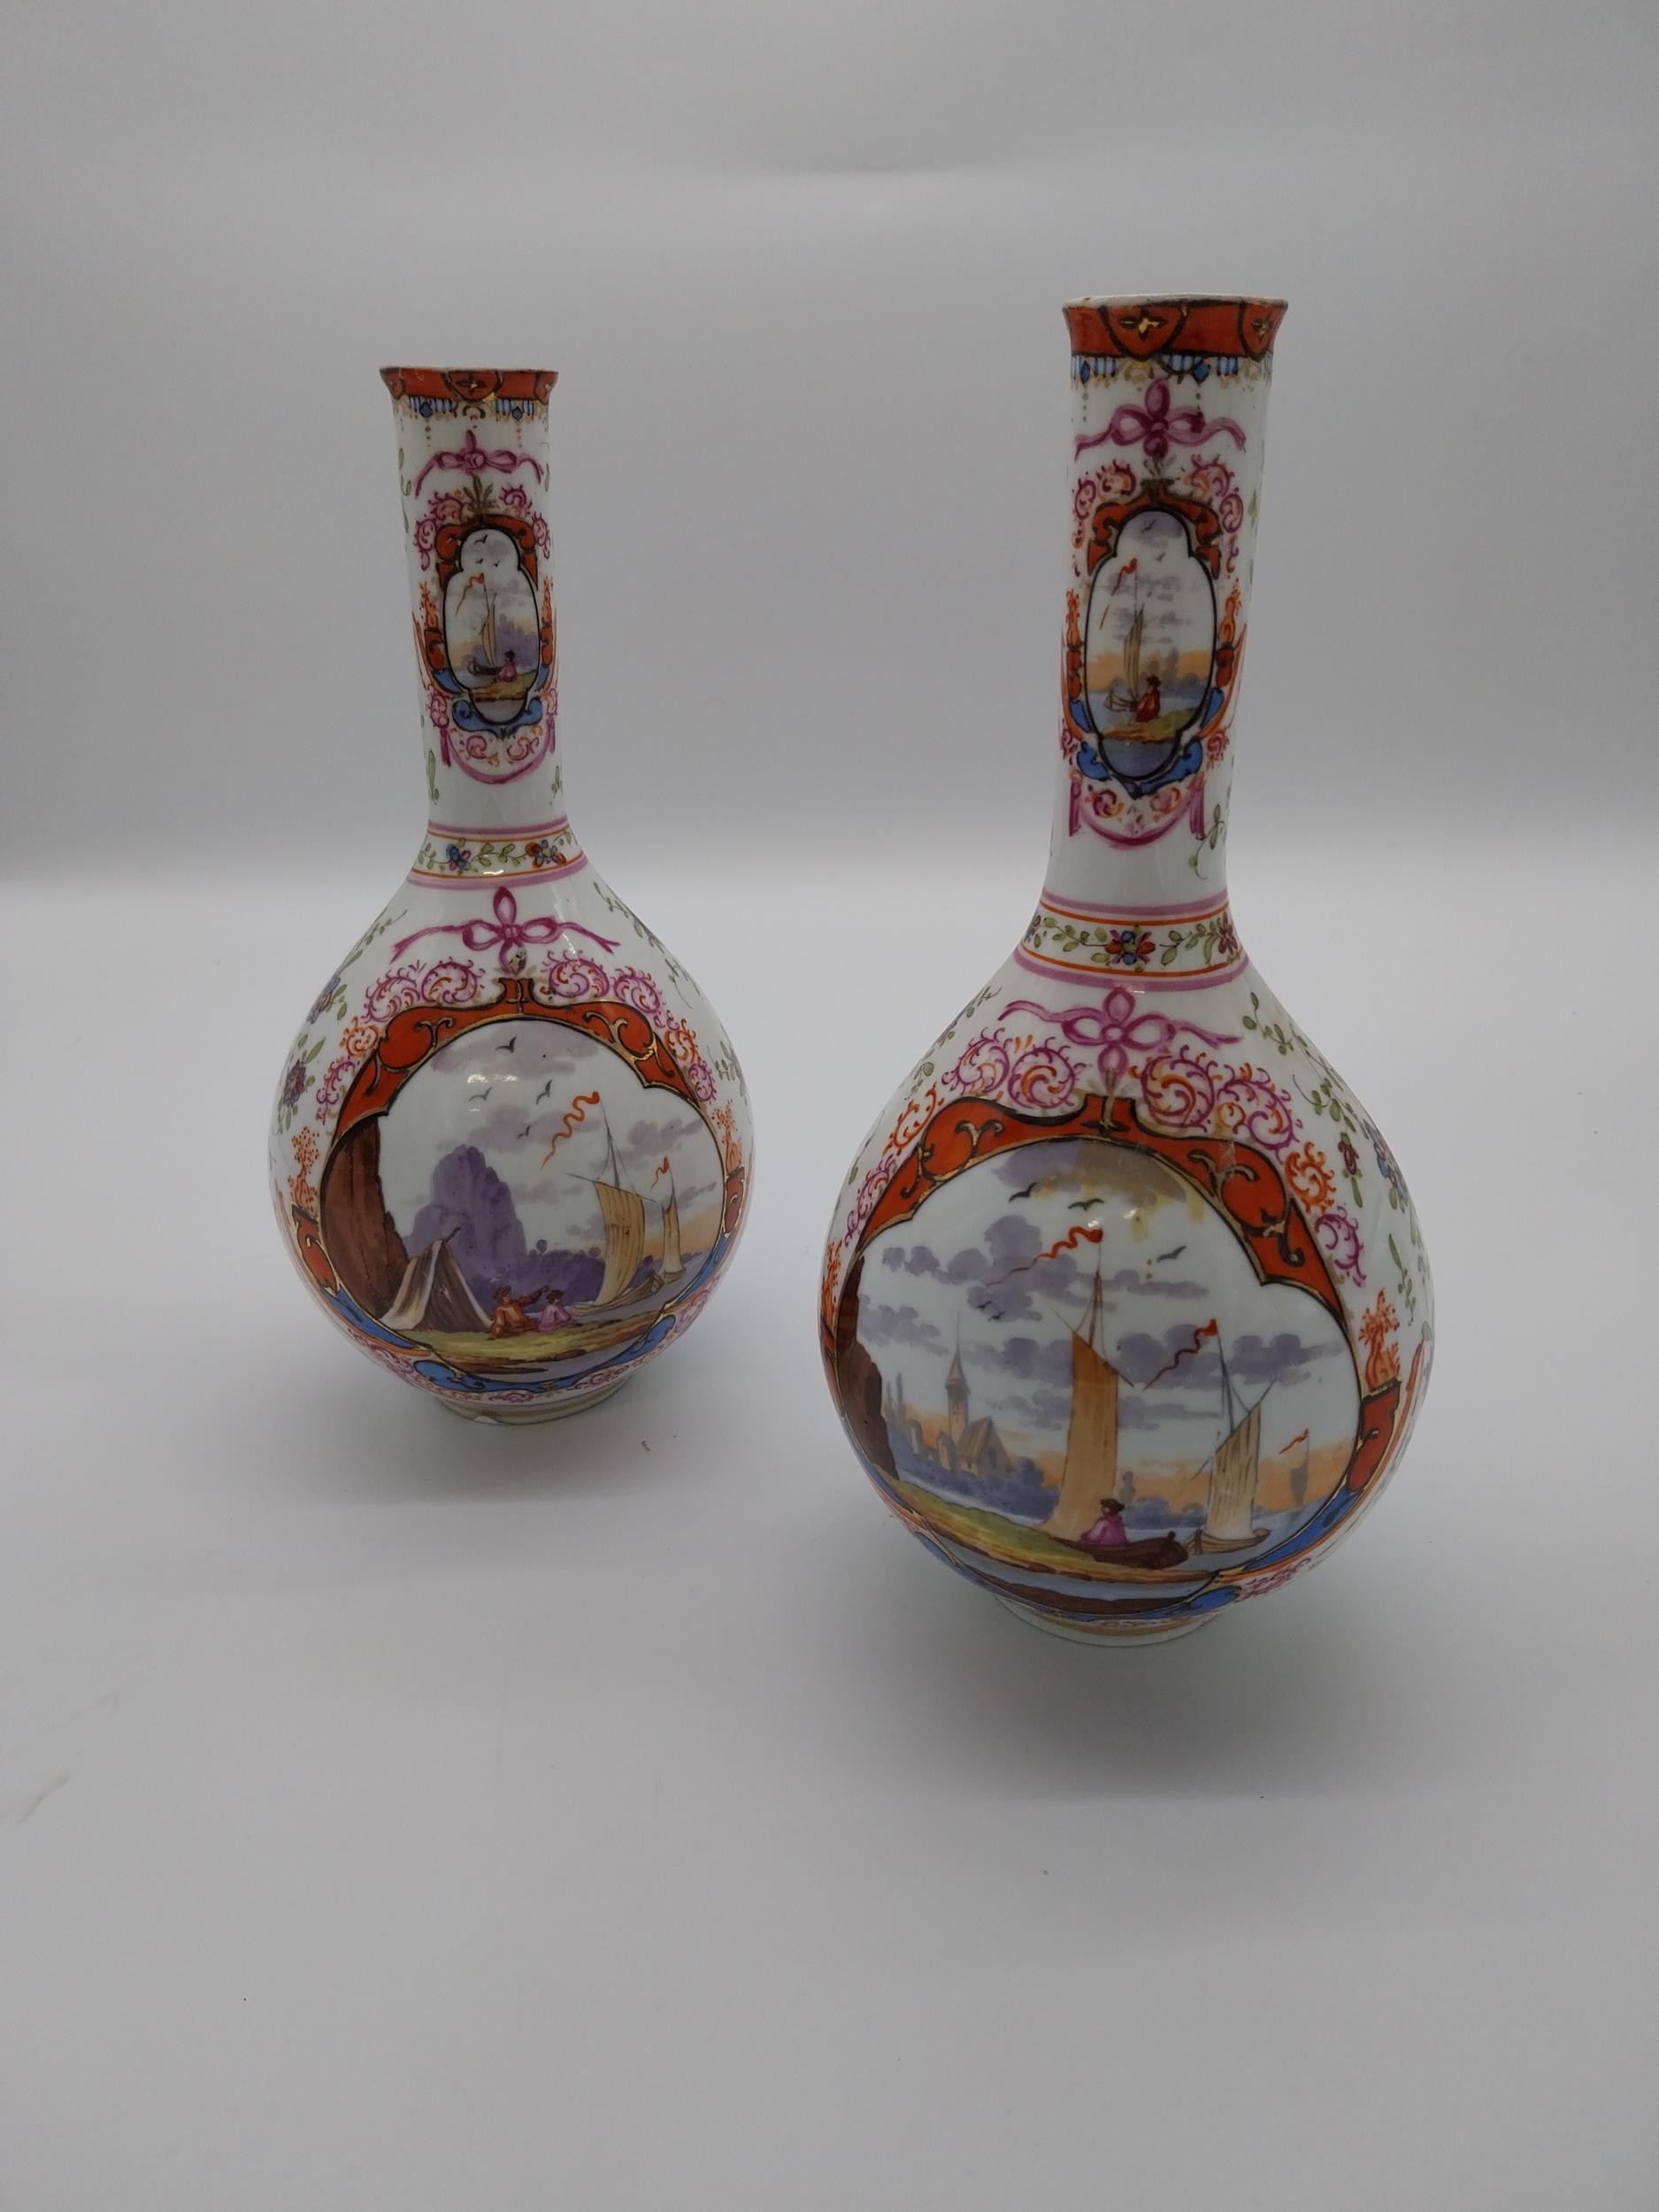 Pair of 19th C. hand painted ceramic Dresden vases depicting Venetian scenes {24 cm H x 11 cm